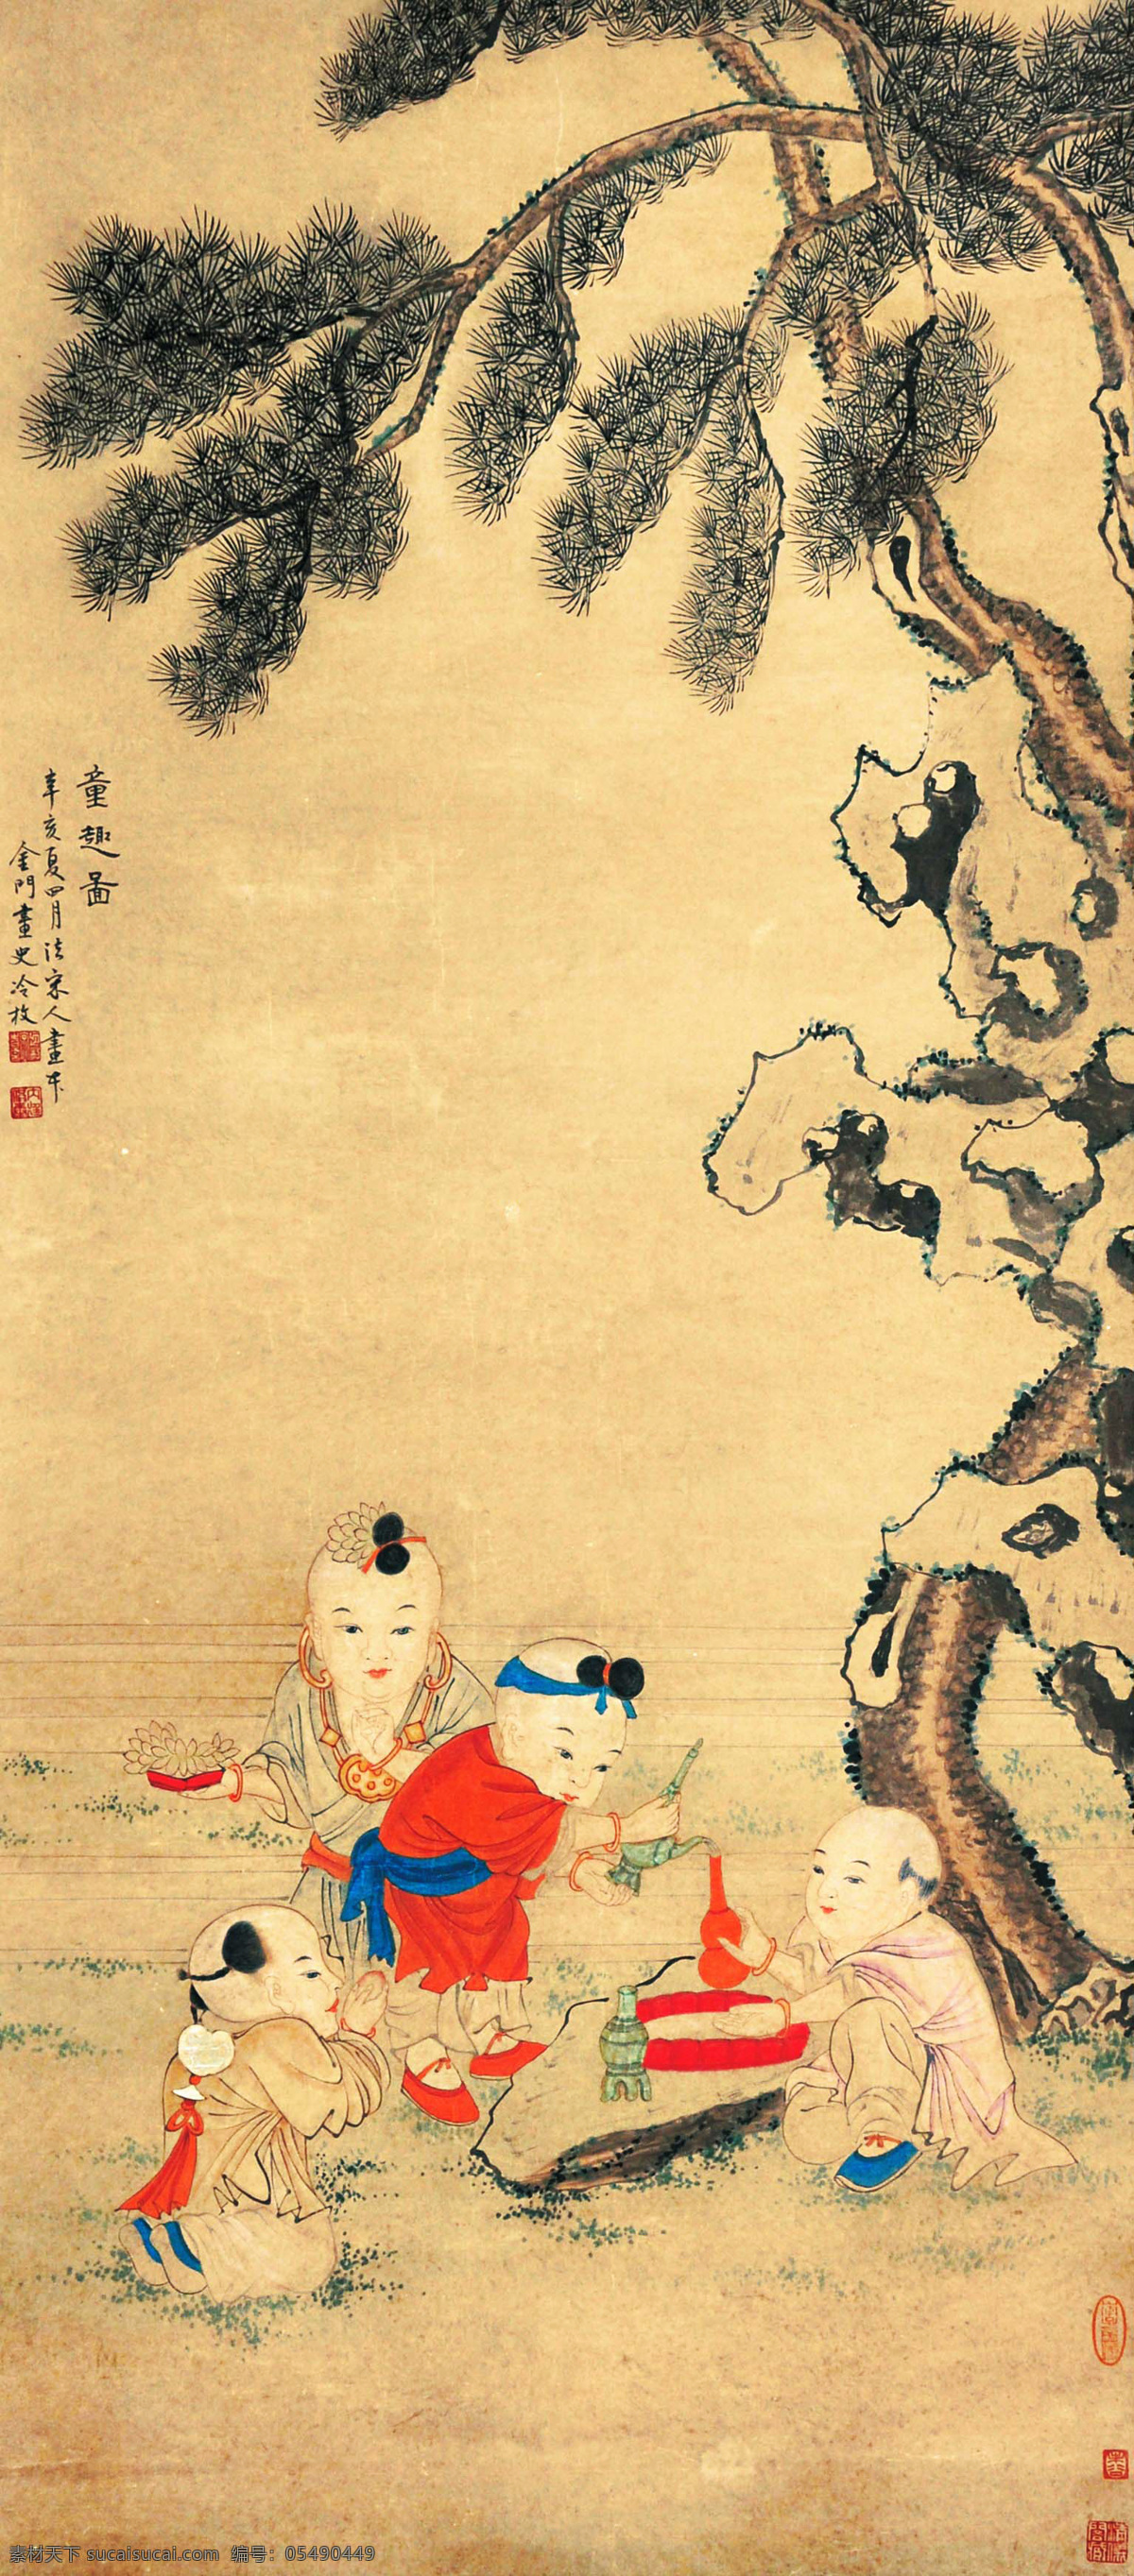 冷枚 童趣图 水墨画 国画 中国画 传统画 名家 绘画 艺术 文化艺术 绘画书法